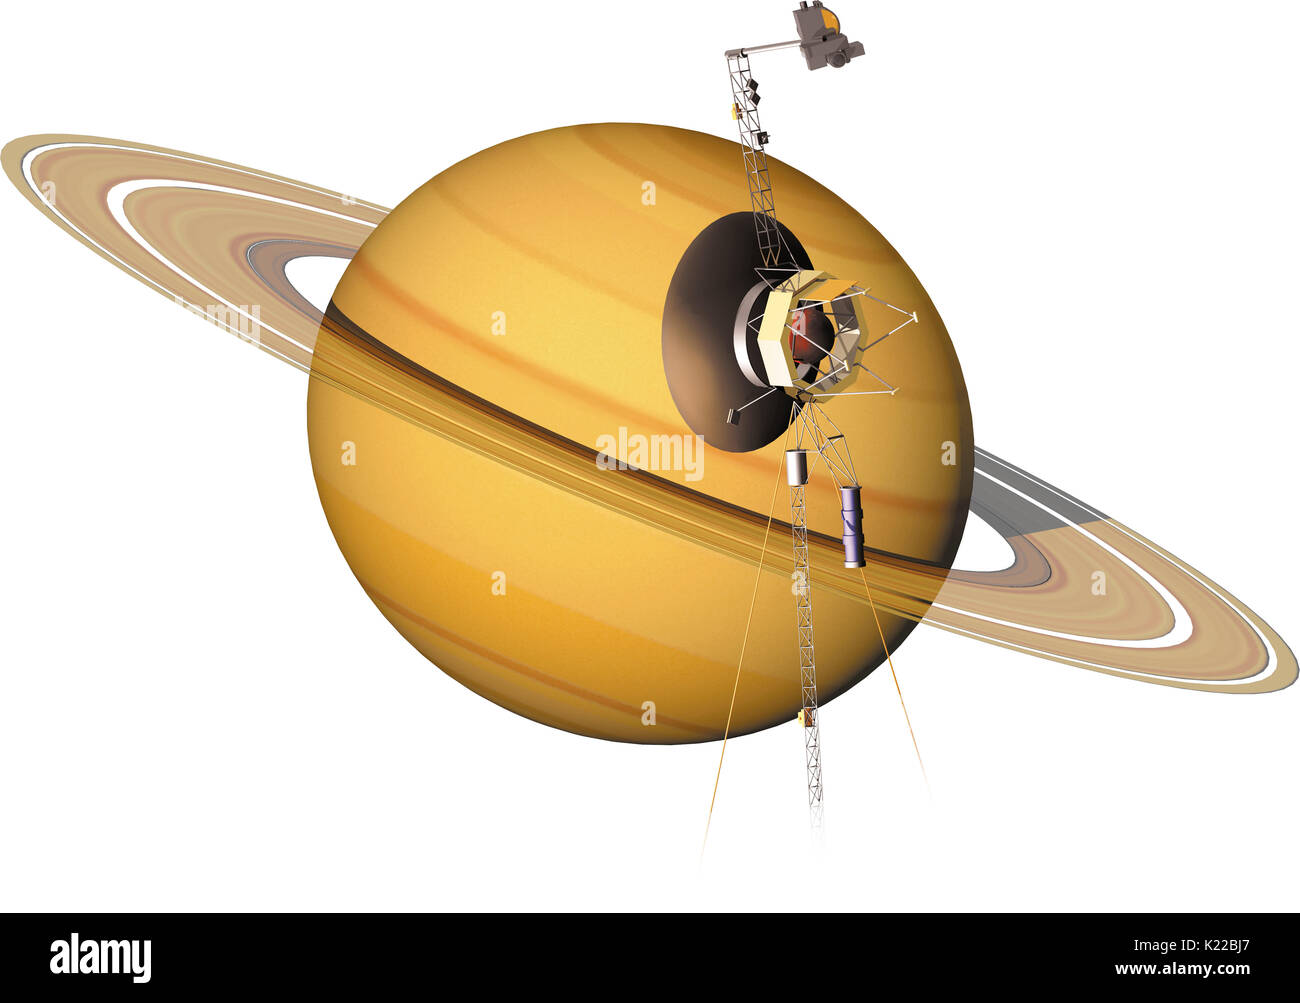 Voyager 1 et 2 a transformé notre connaissance des planètes géantes ; plus de 30 ans, après avoir été lancés en 1977, ils continuent d'explorer l'heliosheath, la région la plus externe du système solaire. Banque D'Images